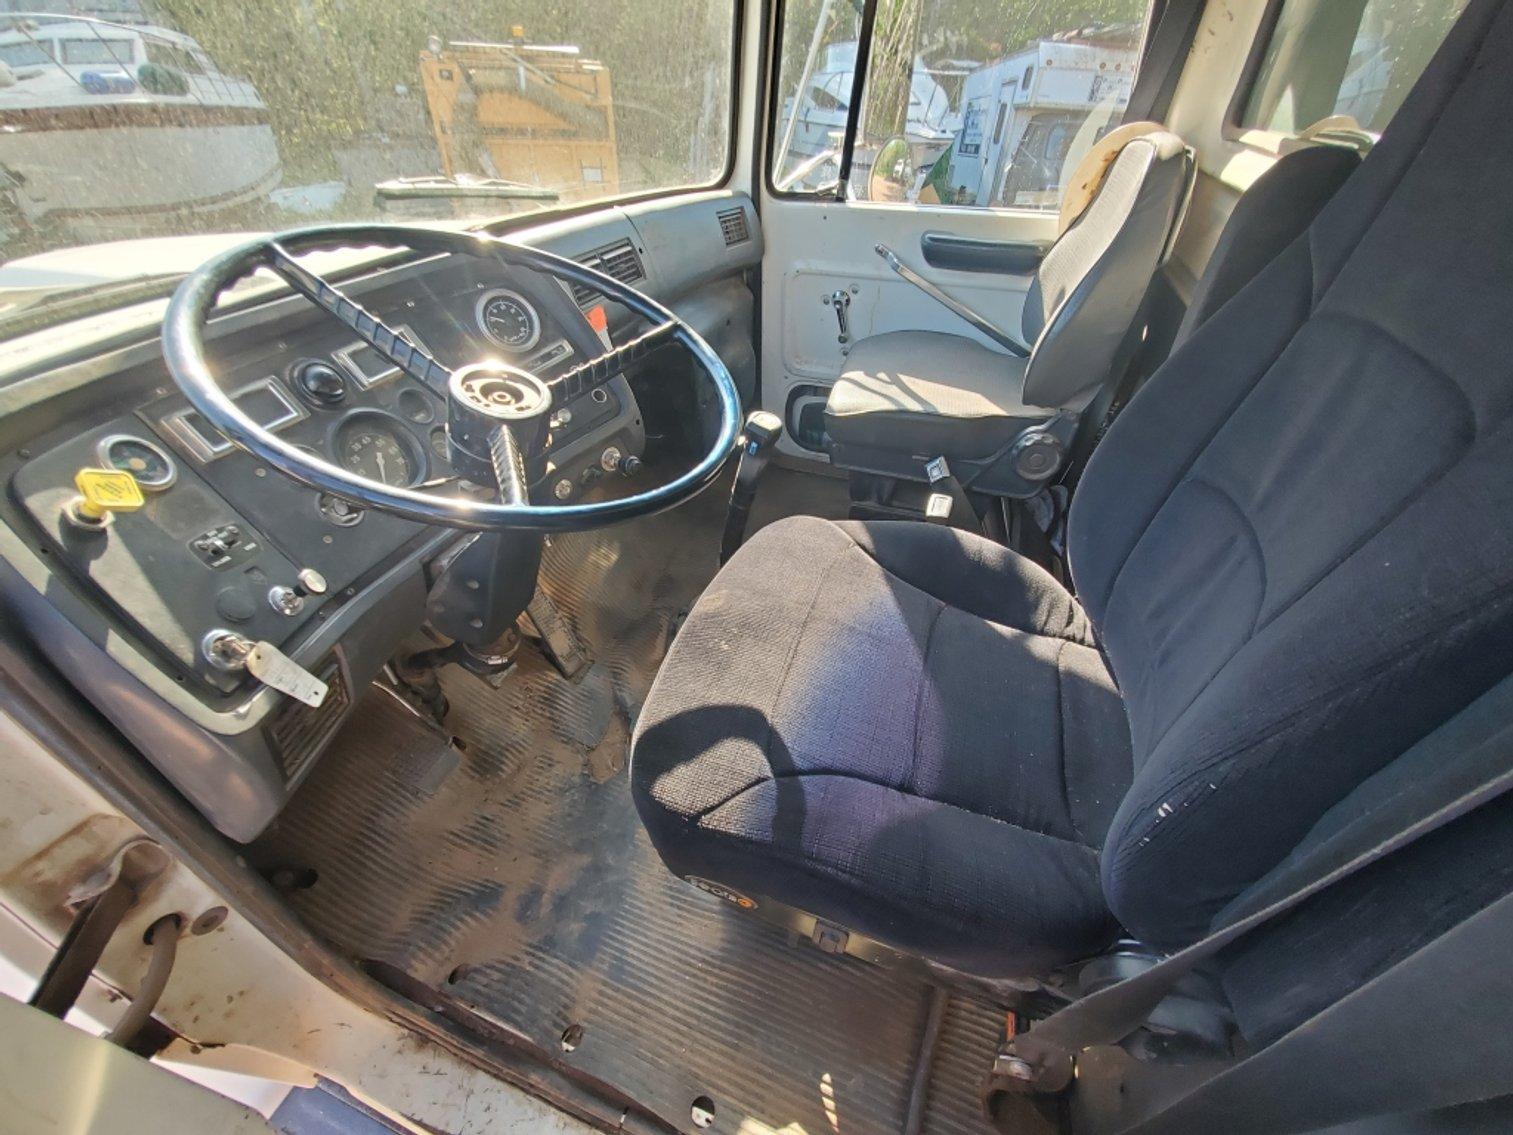 1993 Ford L8000 Dump Truck